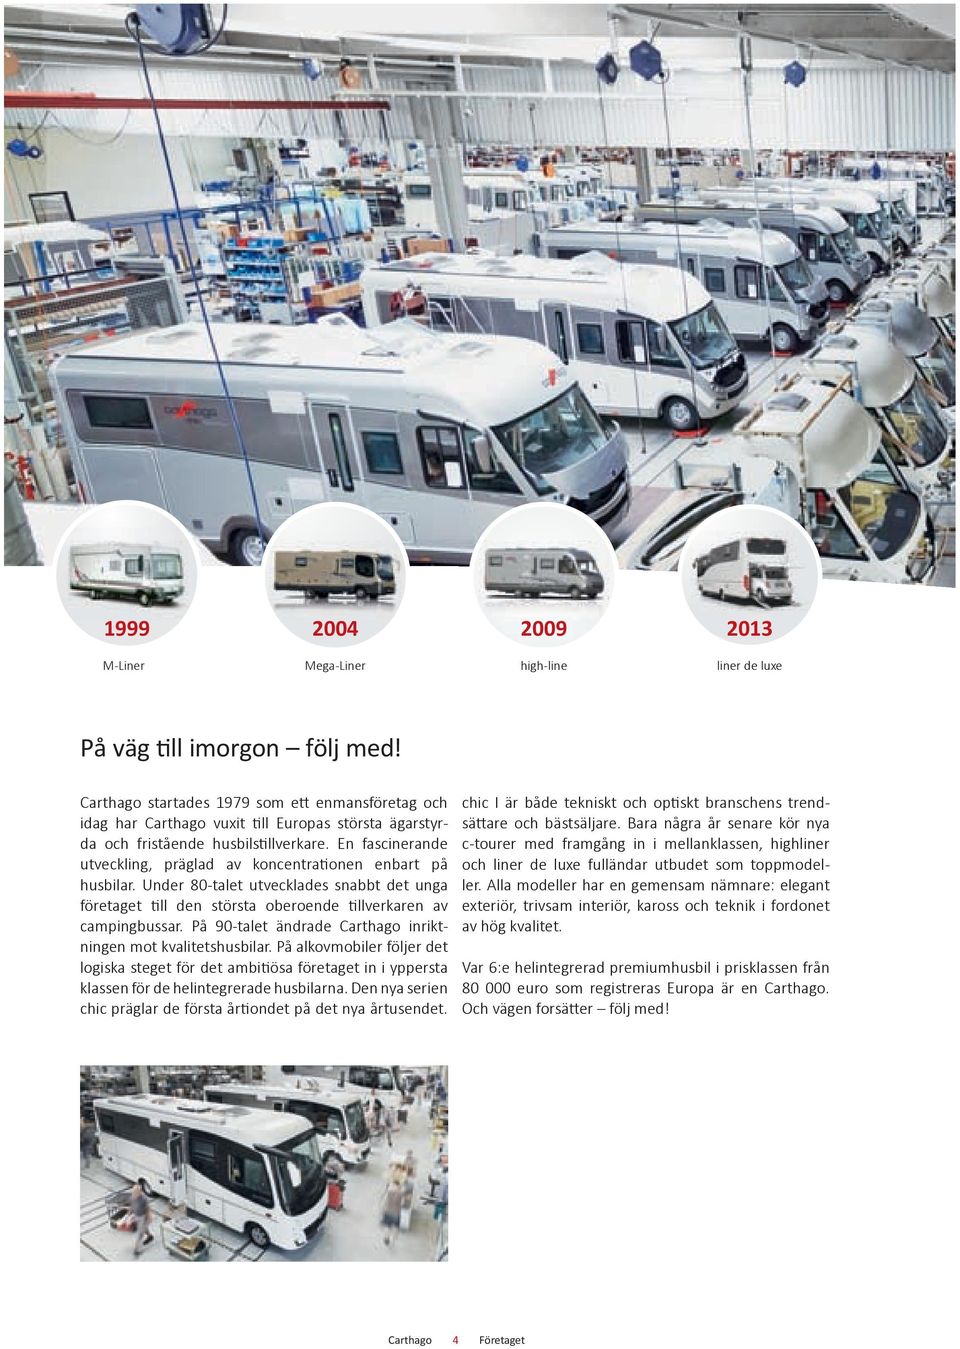 Under 80-talet utvecklades snabbt det unga företaget till den största oberoende tillverkaren av campingbussar. På 90-talet ändrade inriktningen mot kvalitetshusbilar.